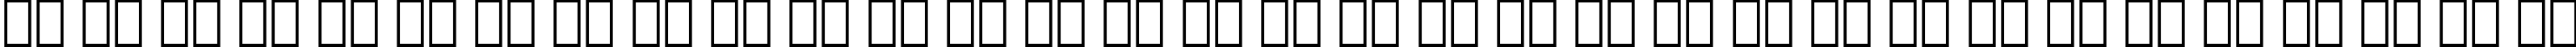 Пример написания русского алфавита шрифтом Serifa Italic BT